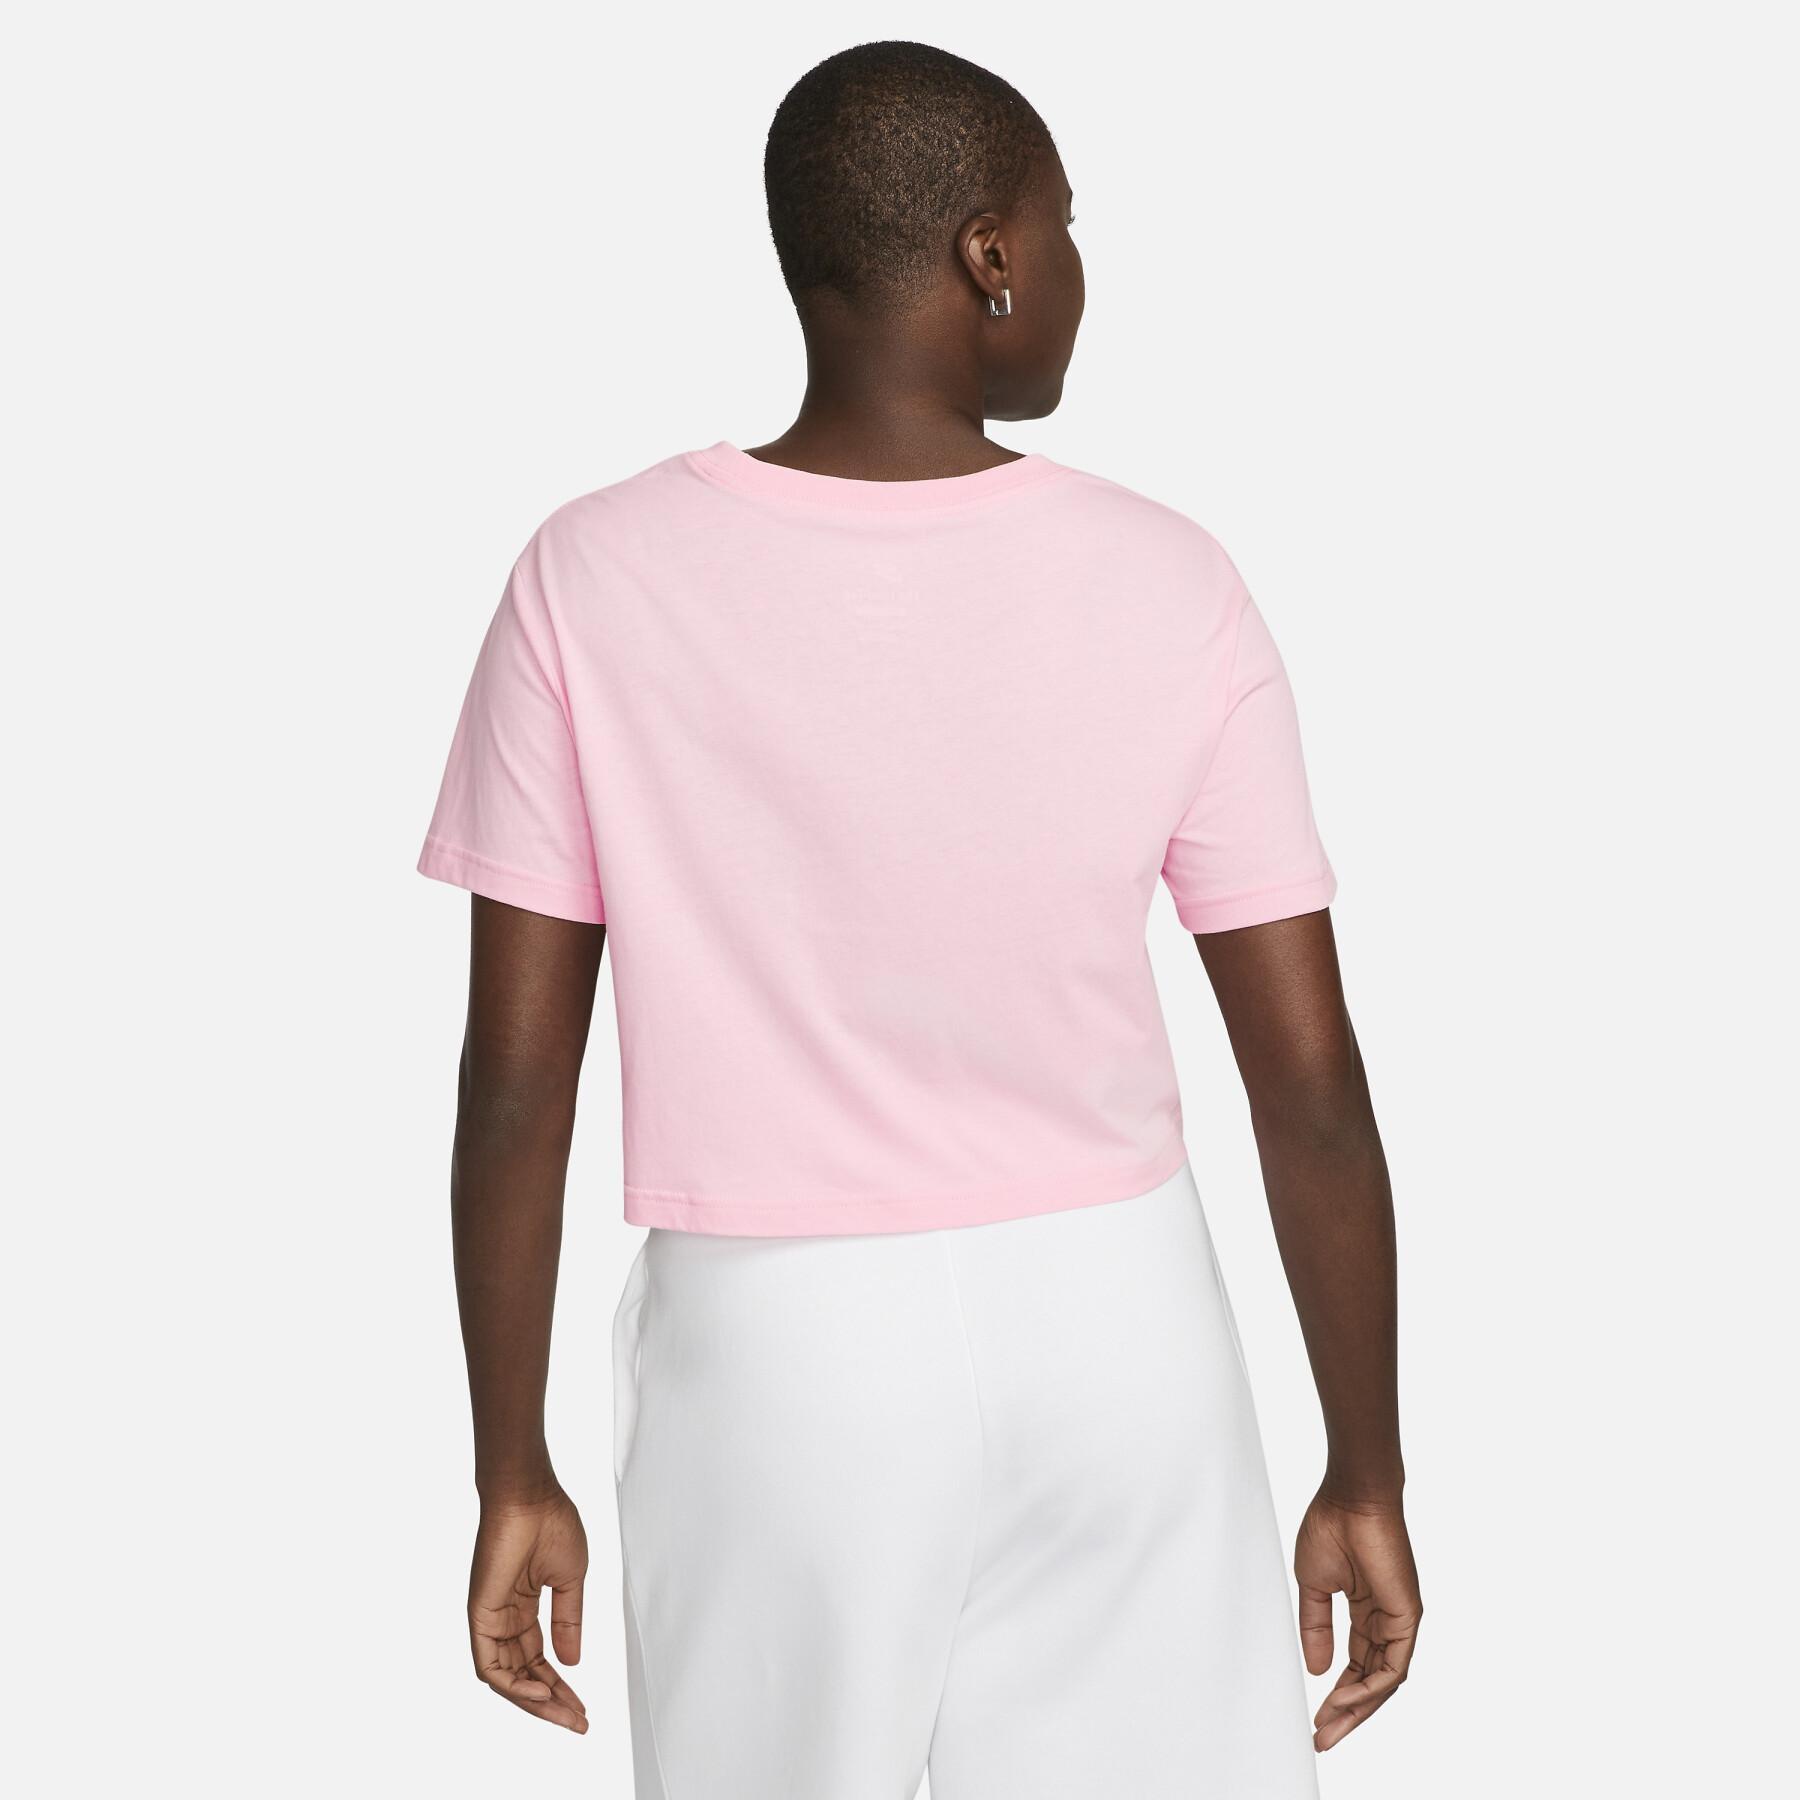 Koszulka damska Nike Essentials